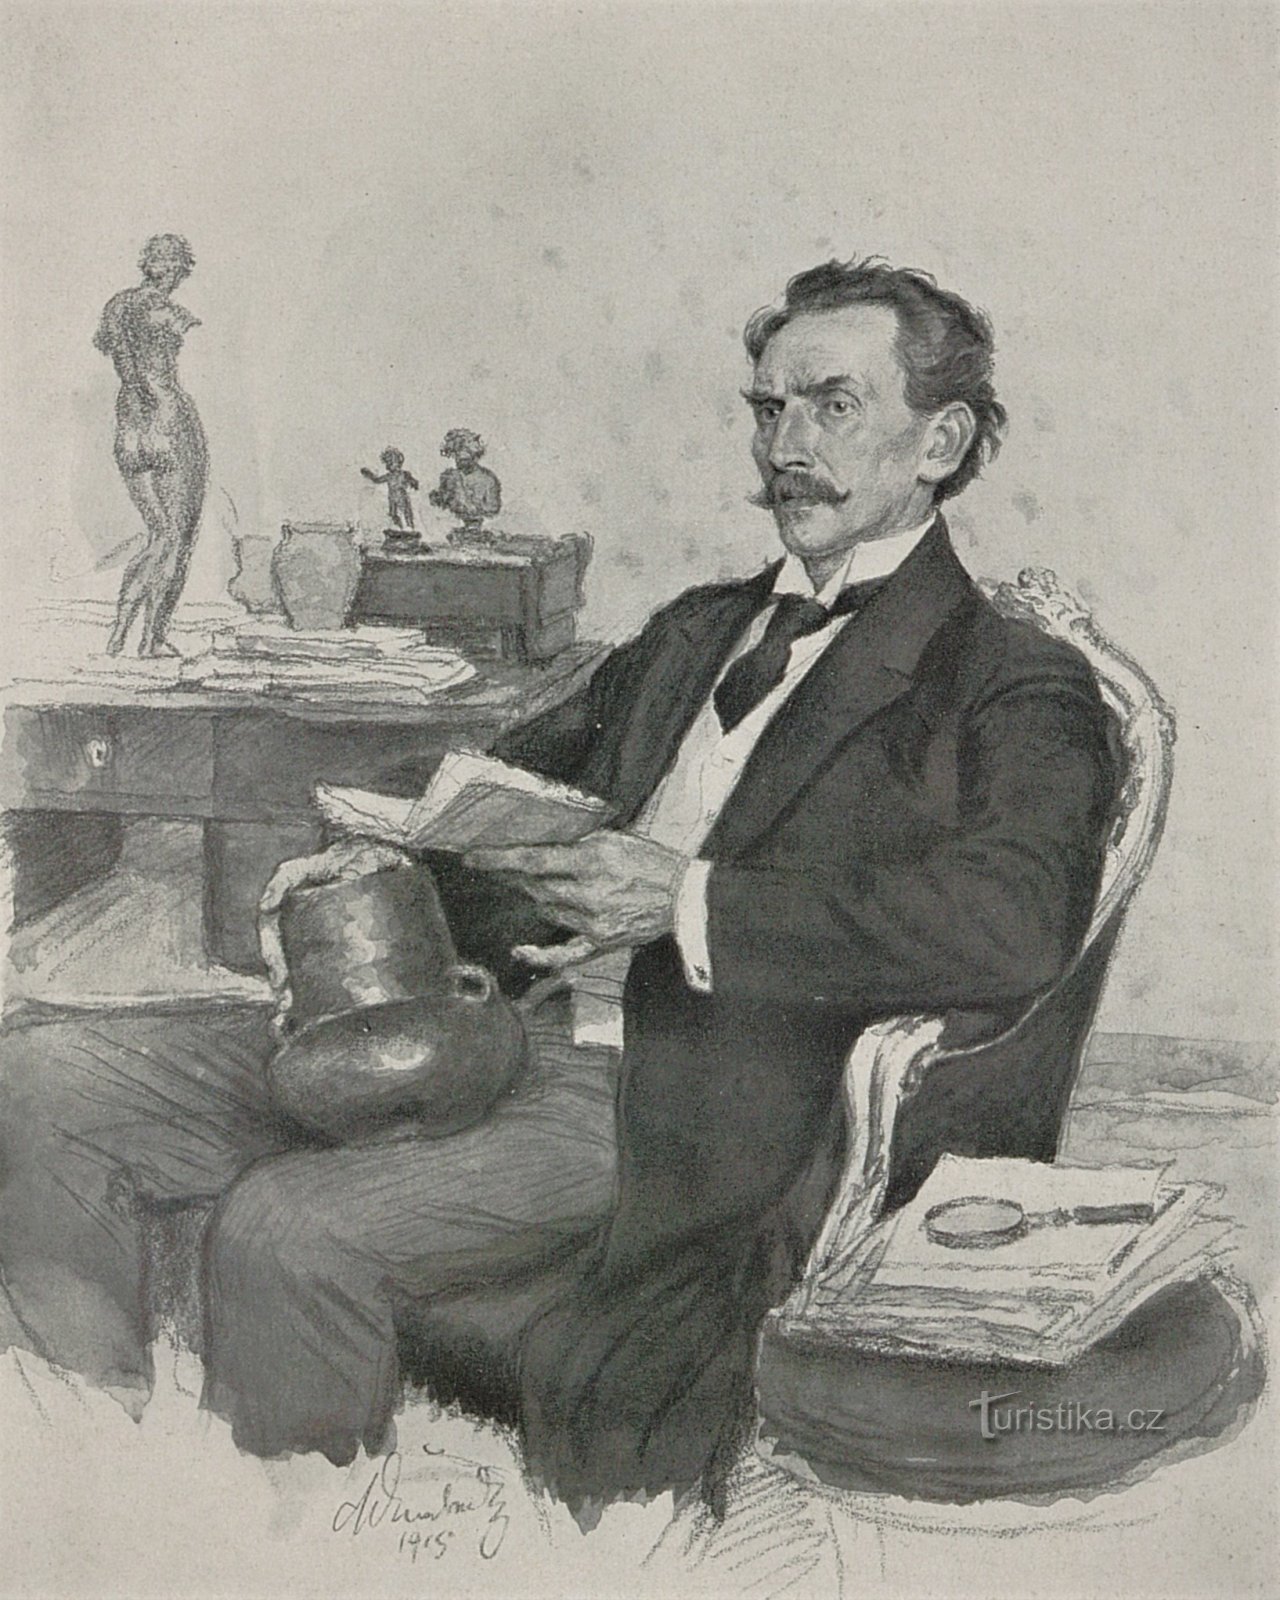 PhDr. Lubor Niederle nach einer Zeichnung von Mikoláš Alš aus dem Jahr 1915